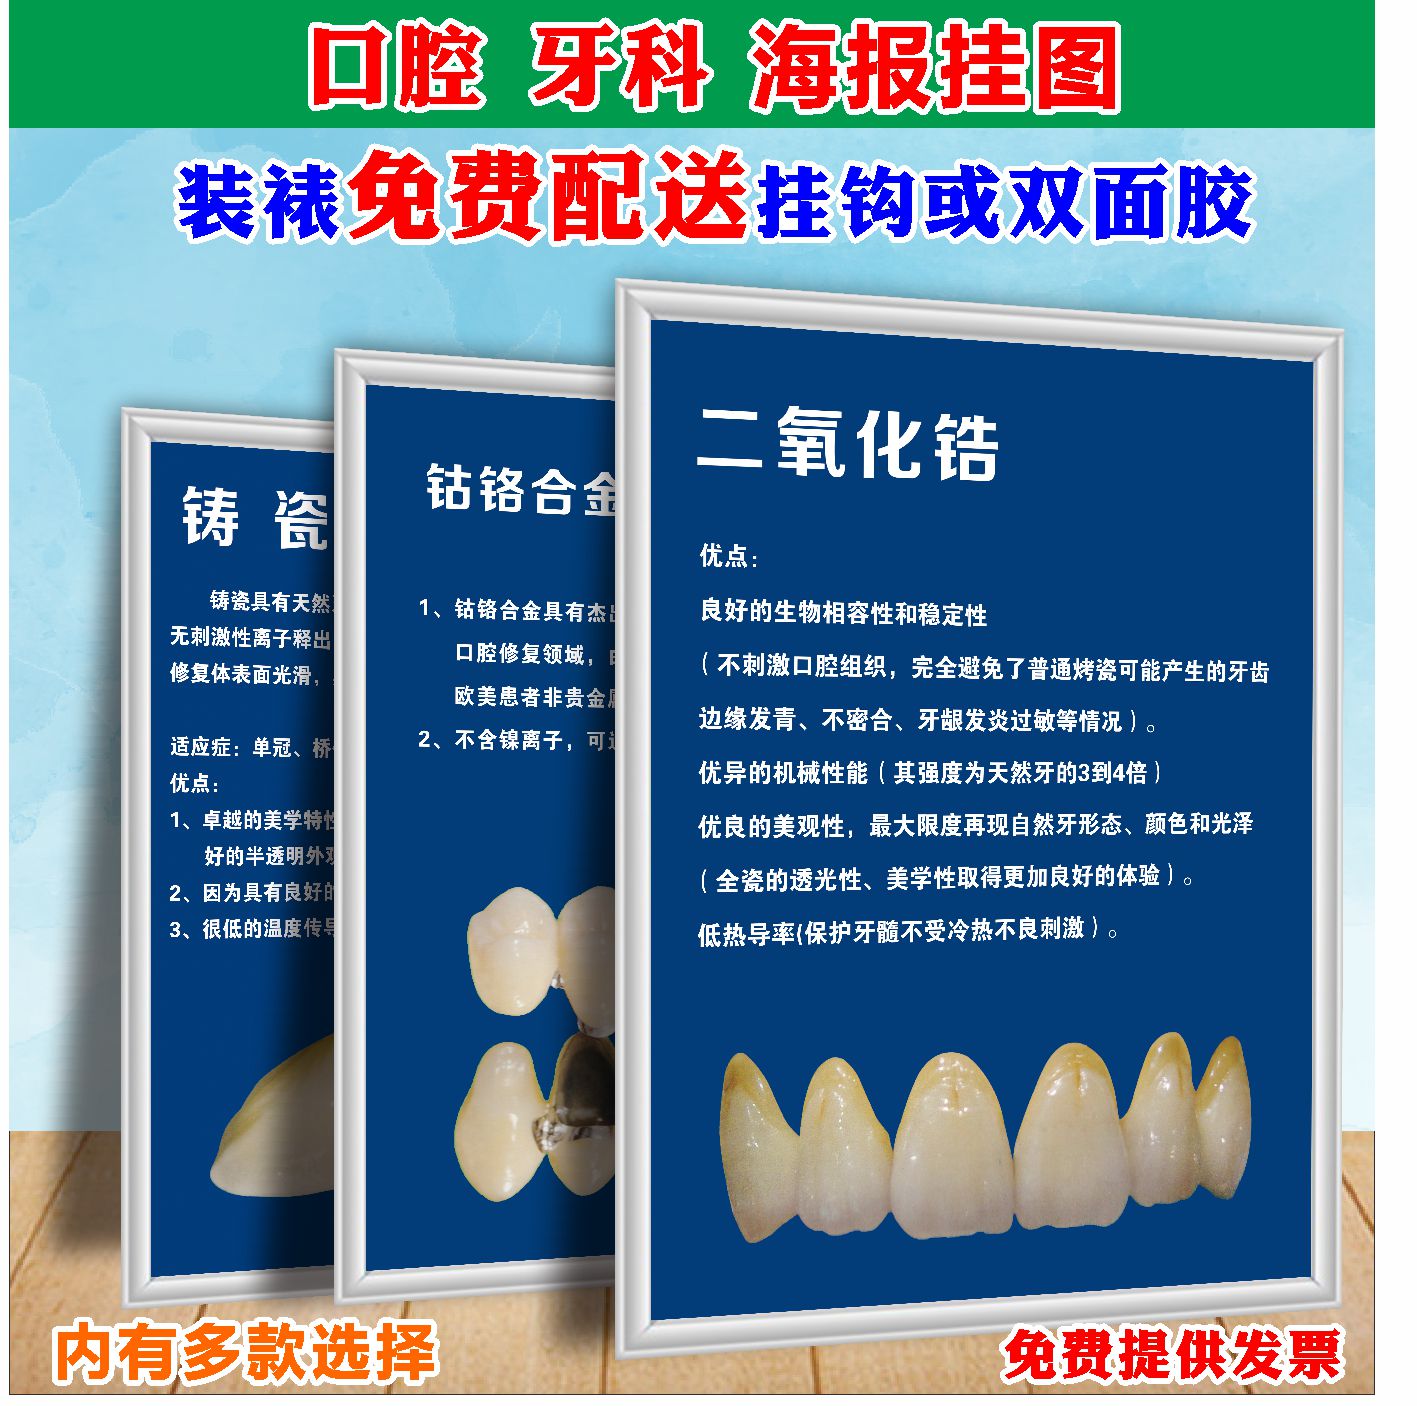 牙科写真口腔科护理医院诊所种植牙烤瓷知识挂图牙齿保健宣传海报